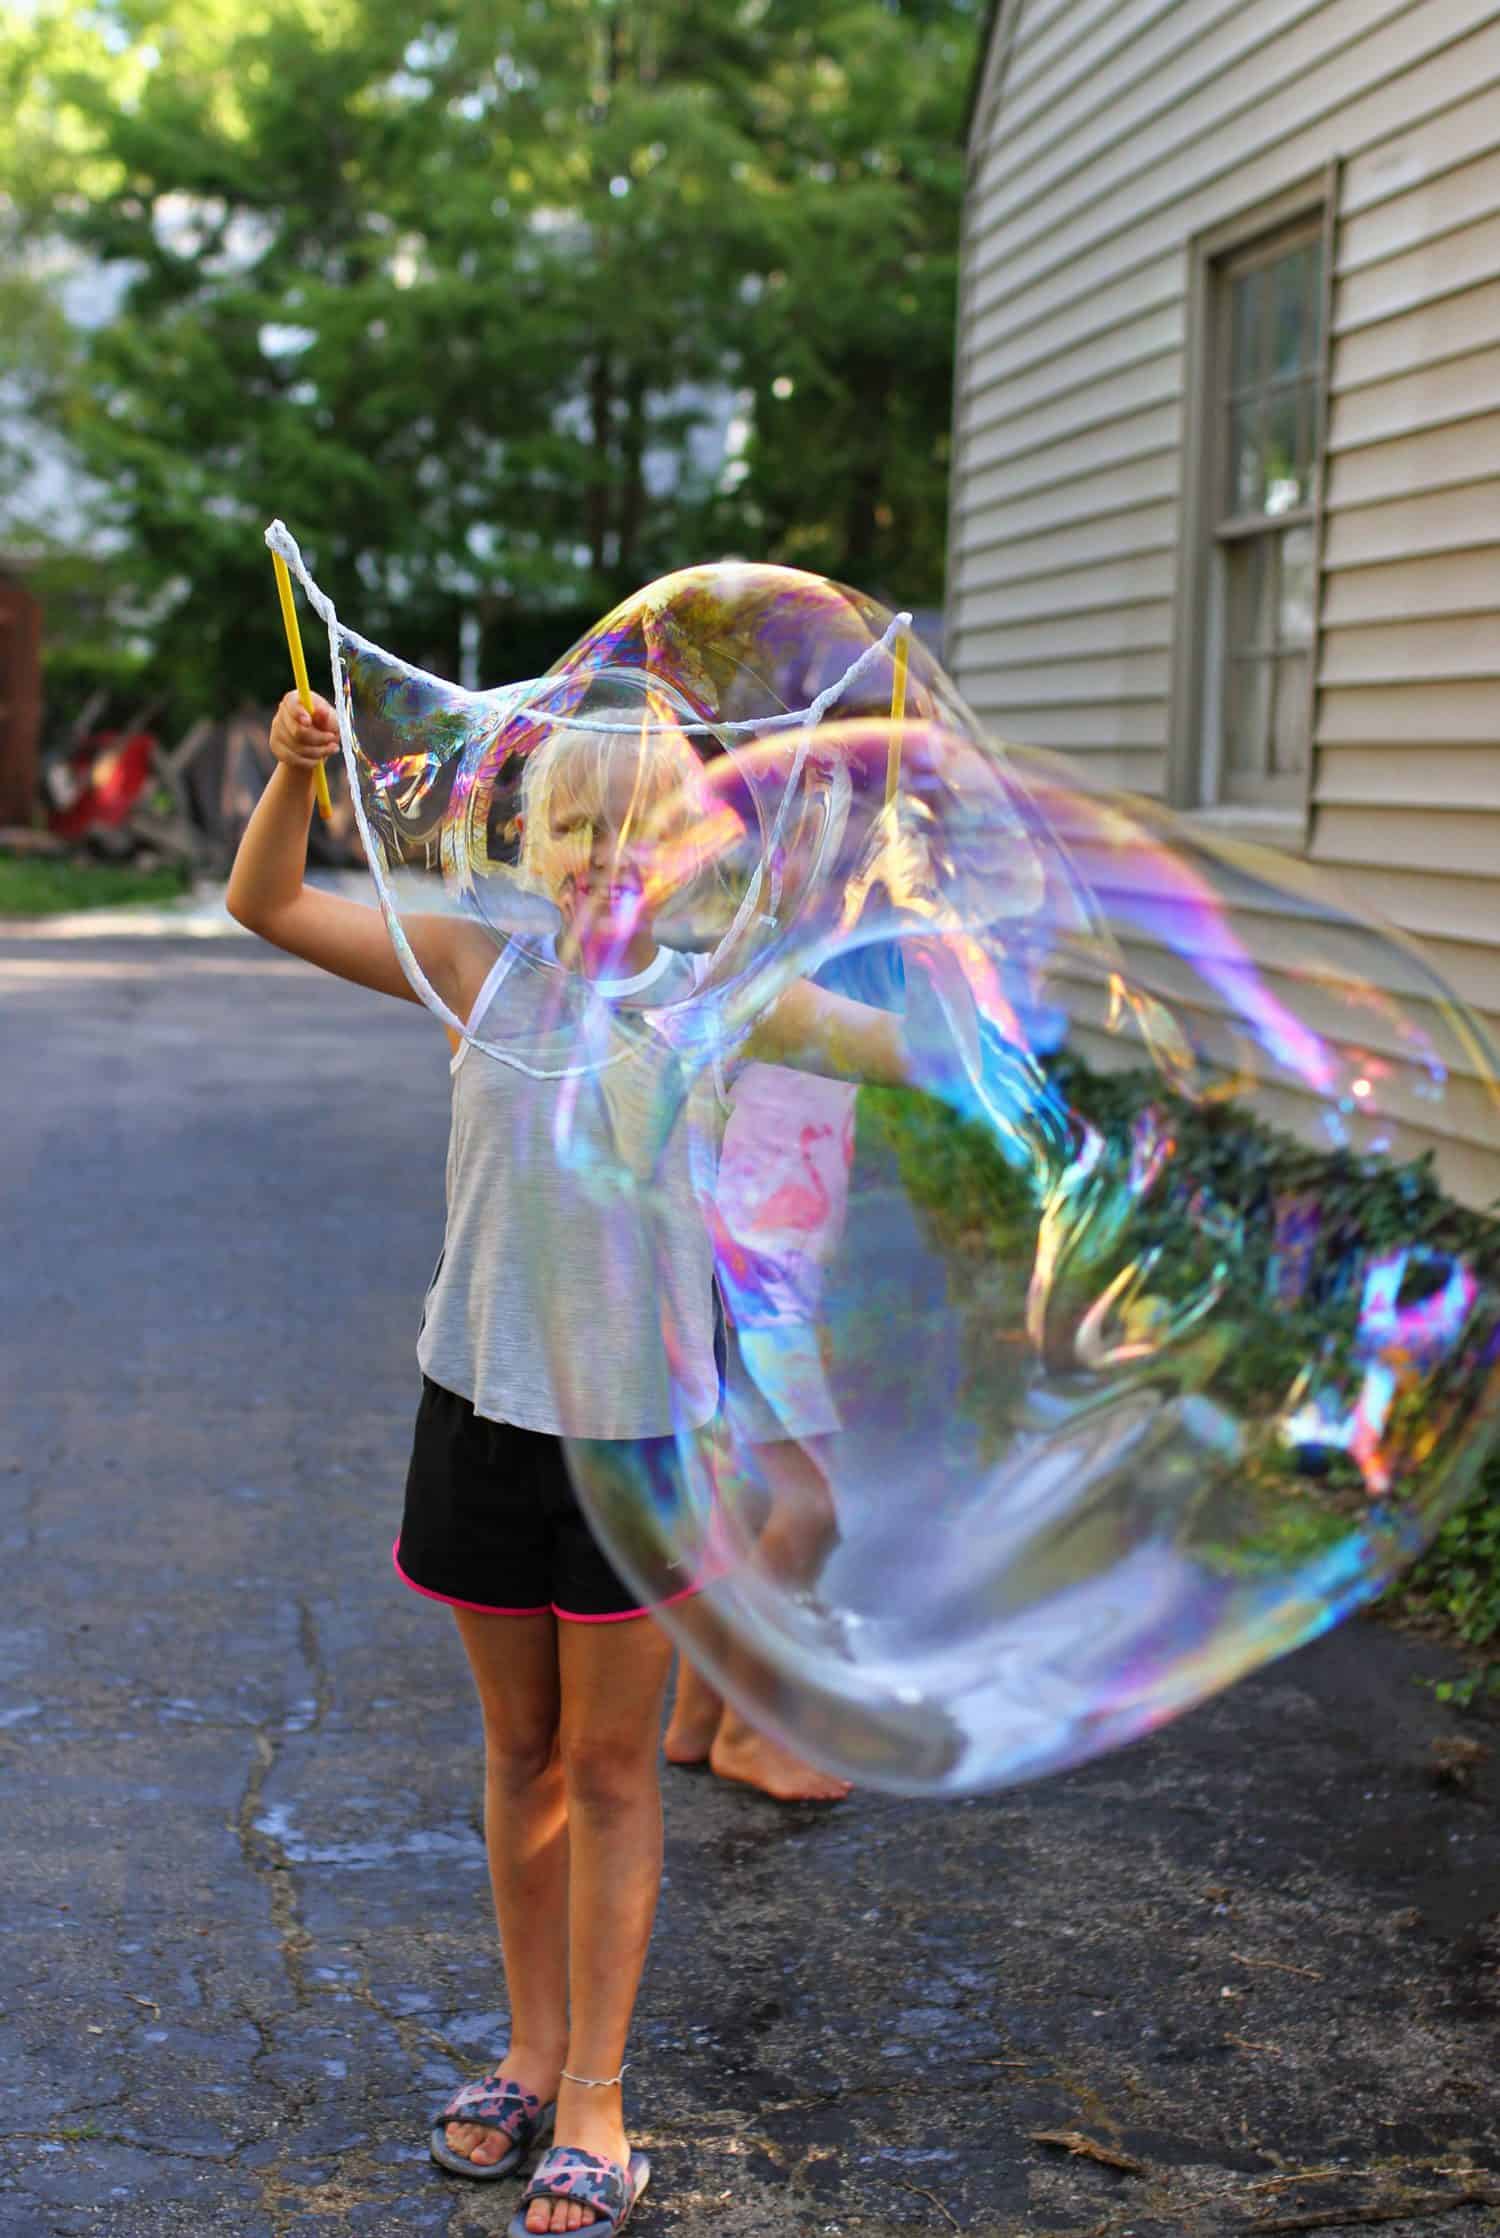 Jogo de Bolas de Sabão SES Creative Rocket and trained of bubbles (FR) –  Mundo das Crianças